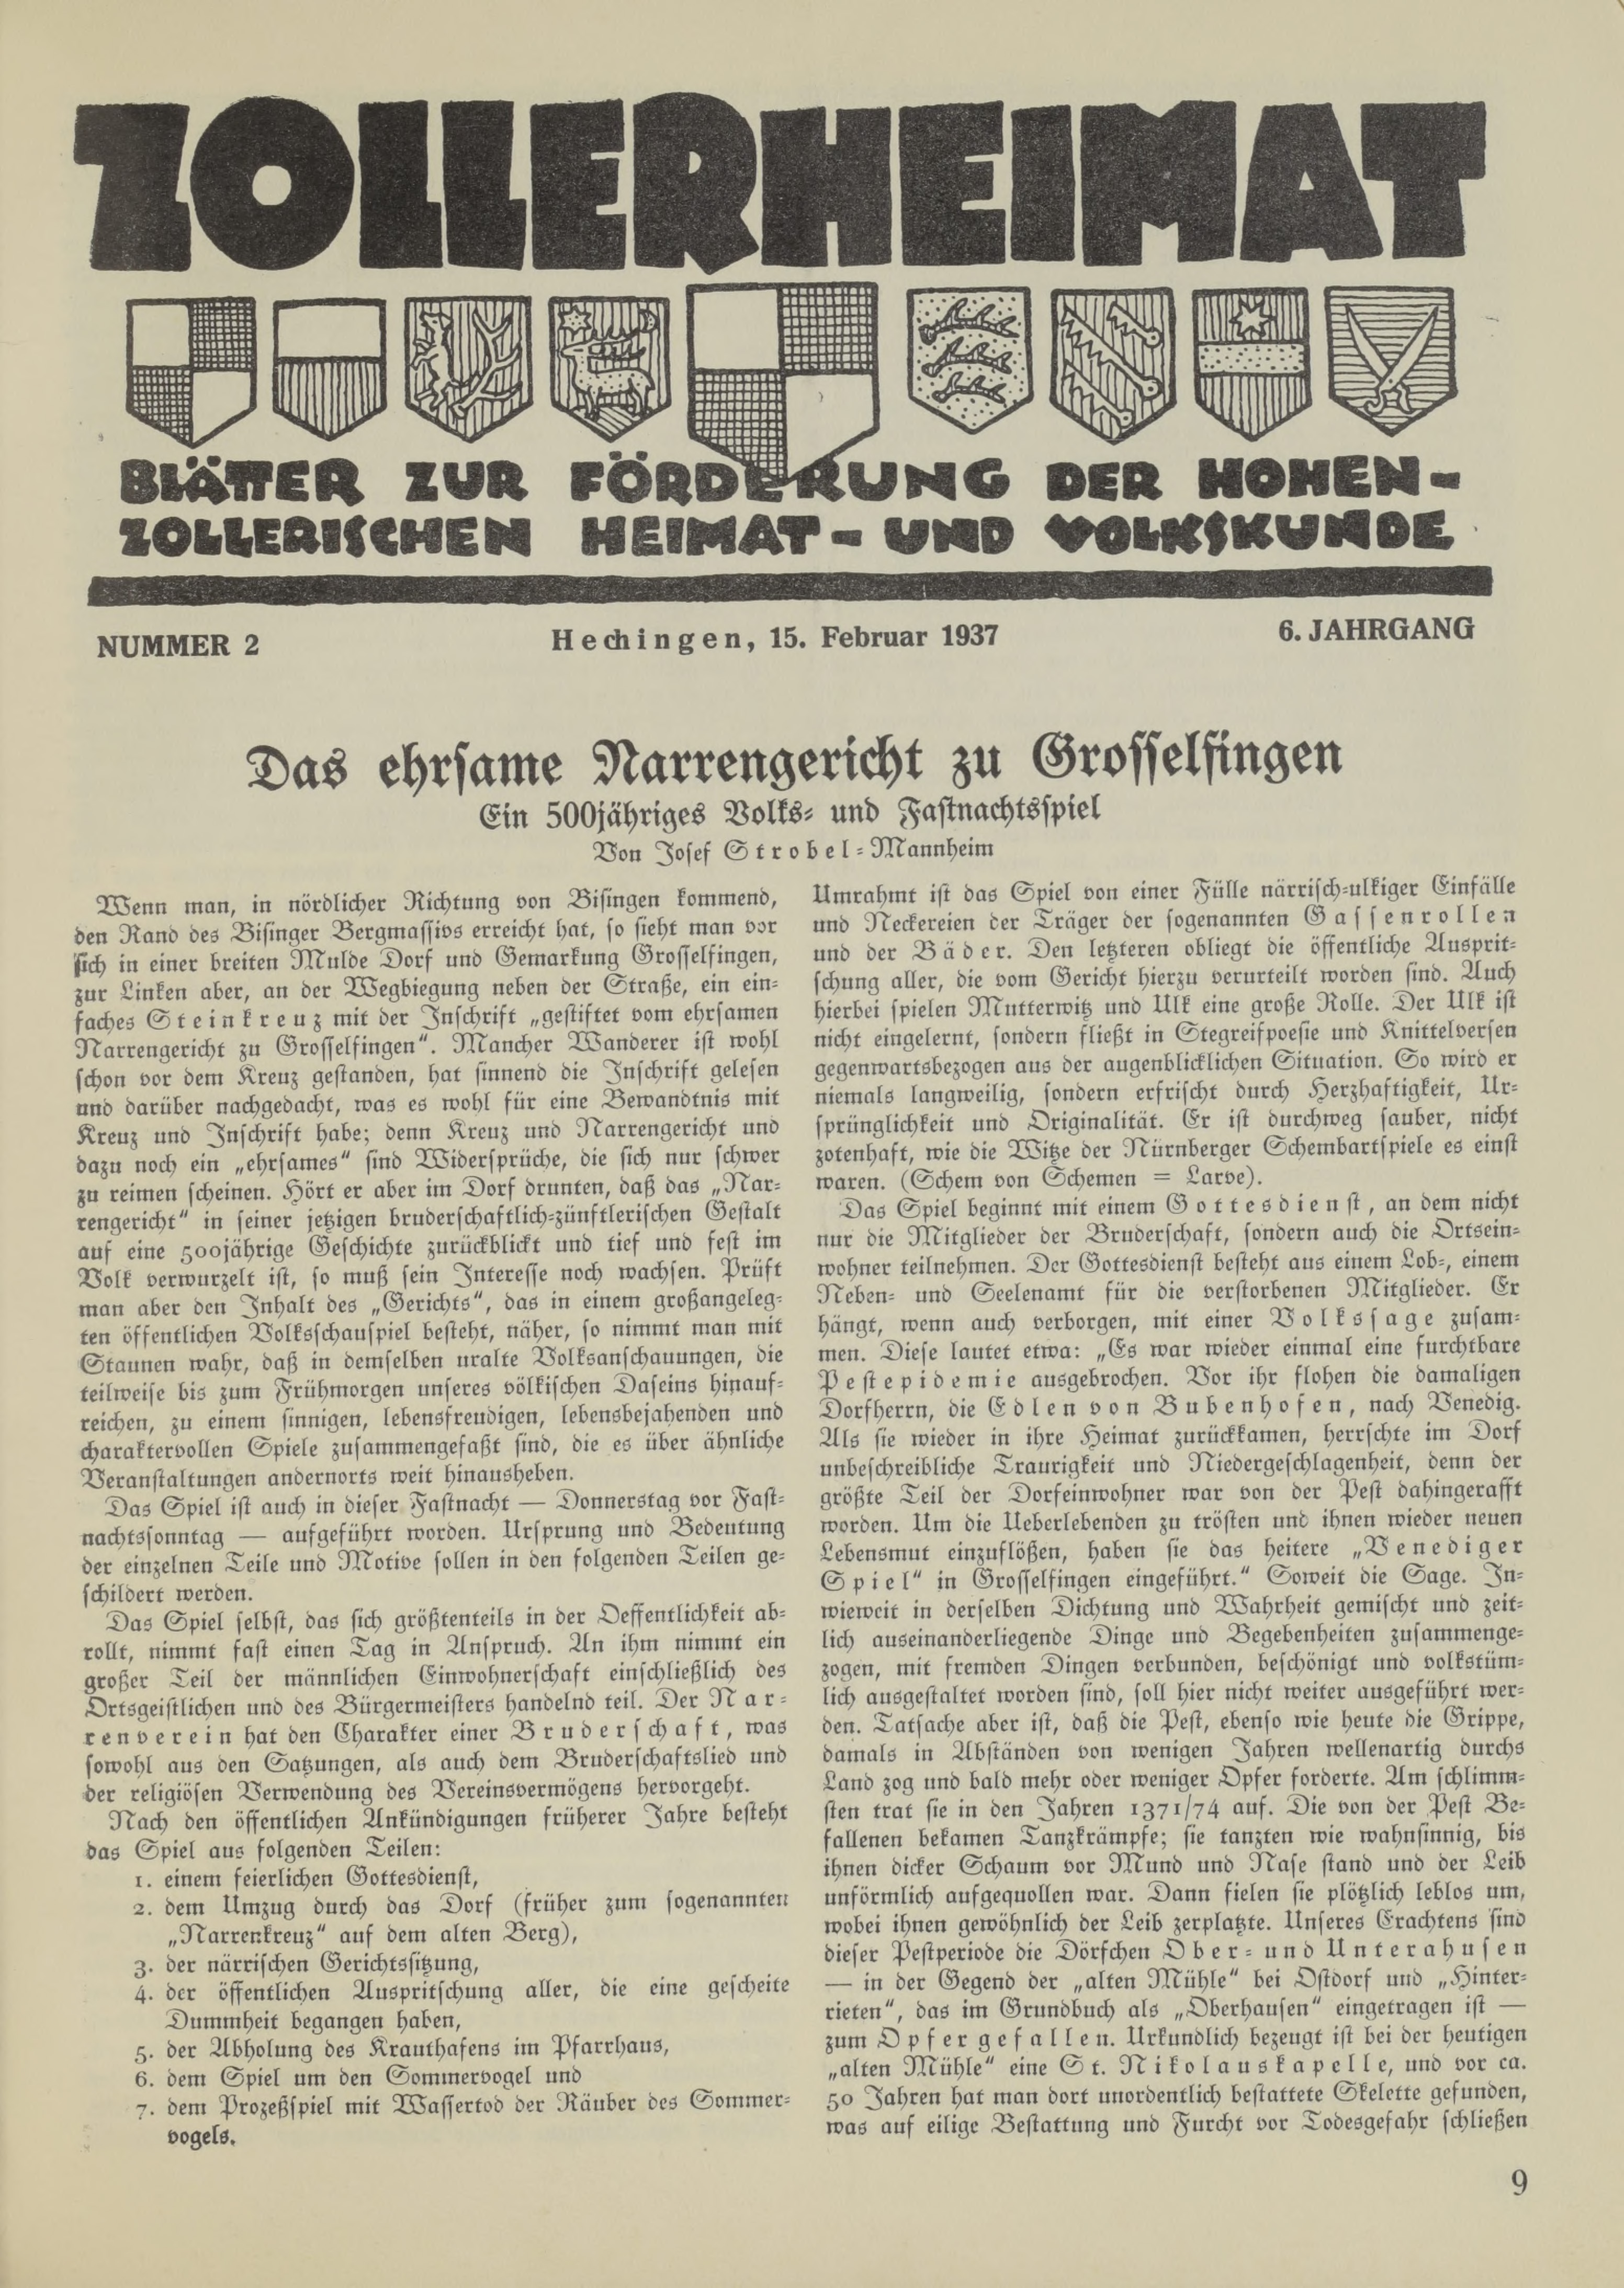                     Ansehen Bd. 6 Nr. 2 (1937): Zollerheimat
                